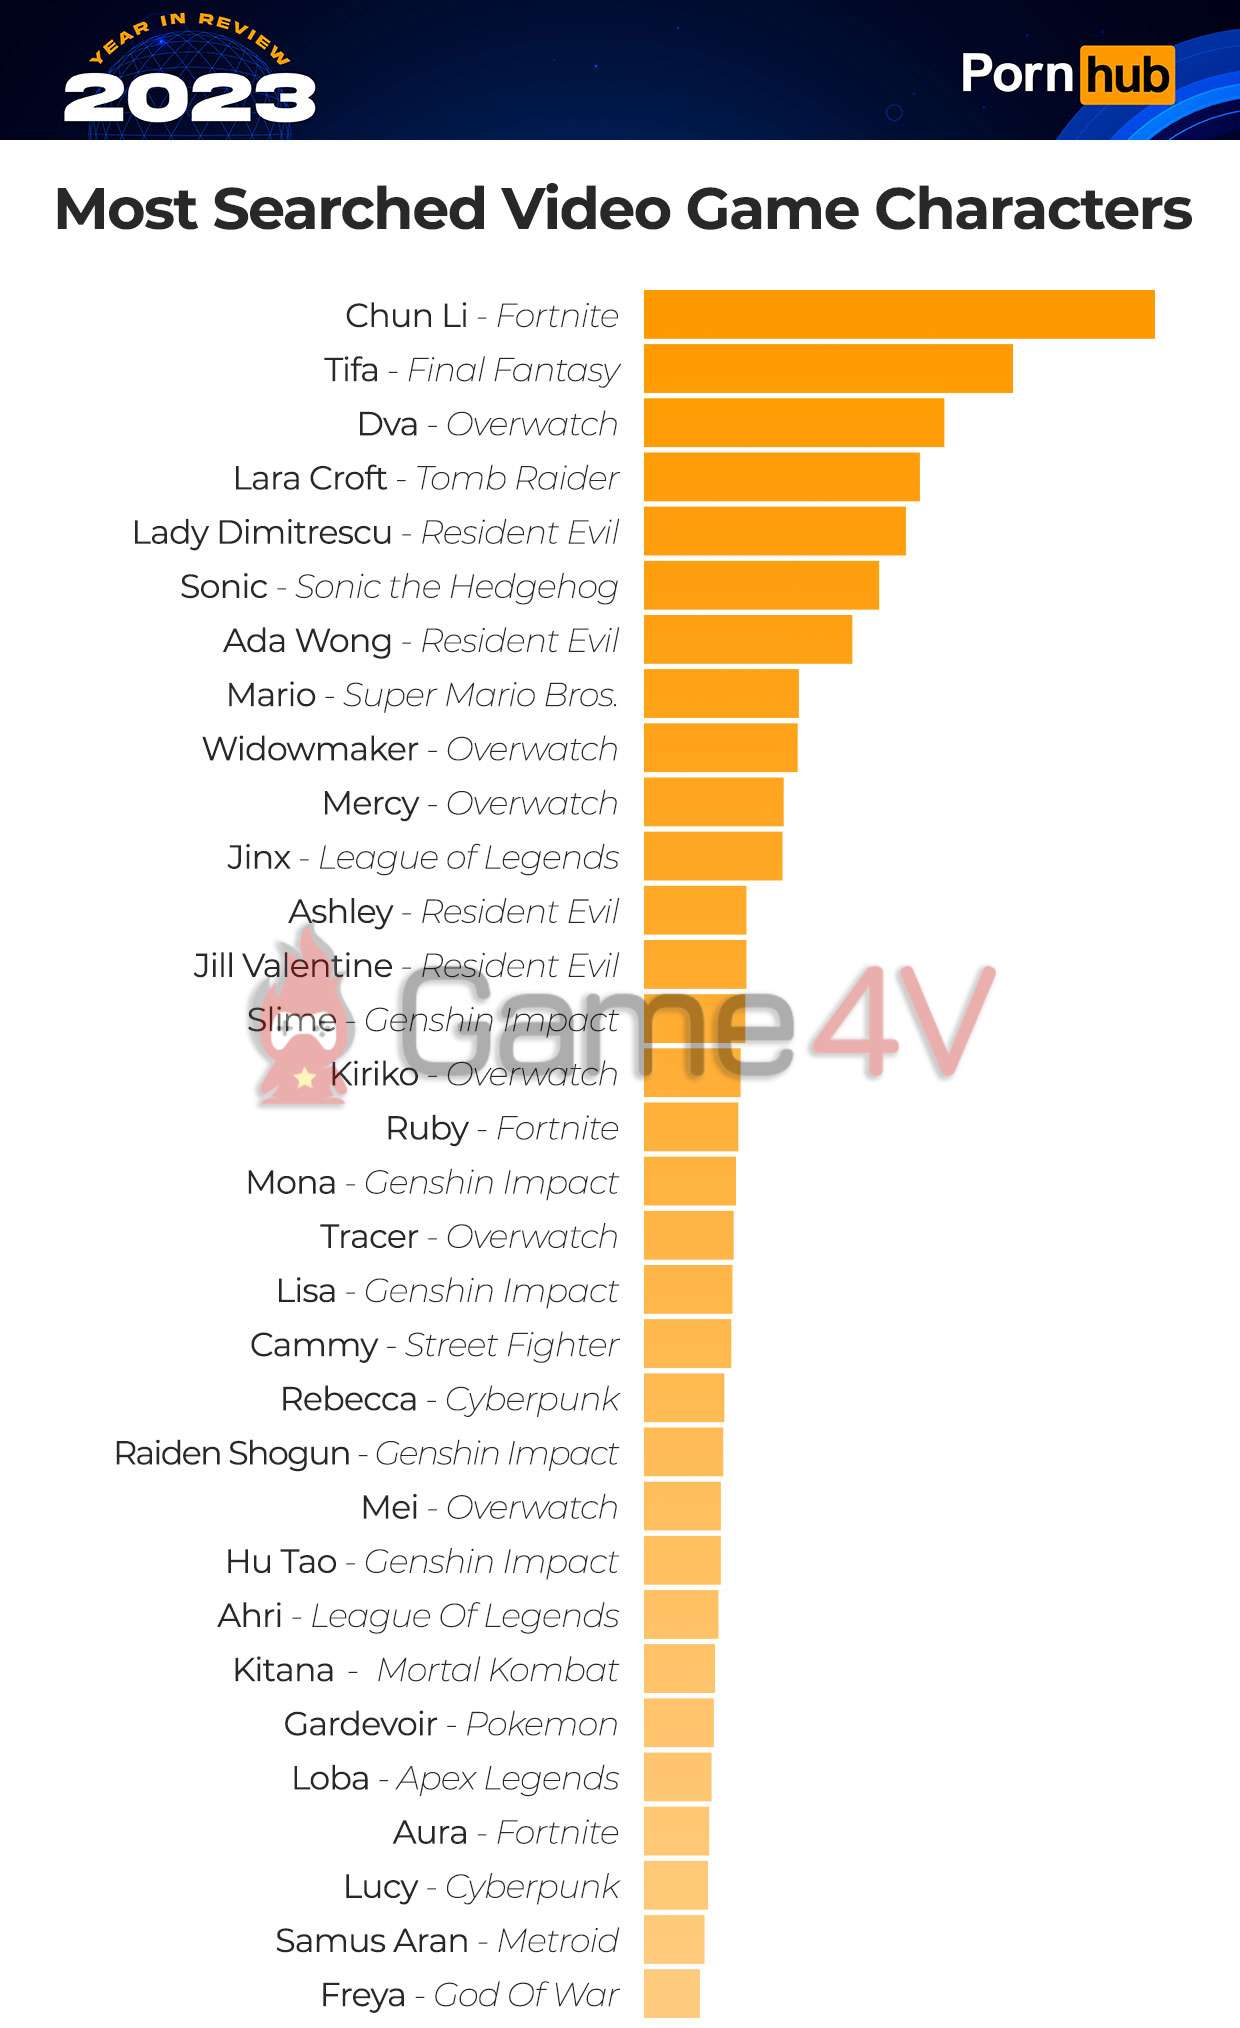 Bảng xếp hạng những nhân vật game được tìm kiếm nhiều nhất trên P*rnhub trong năm 2023.